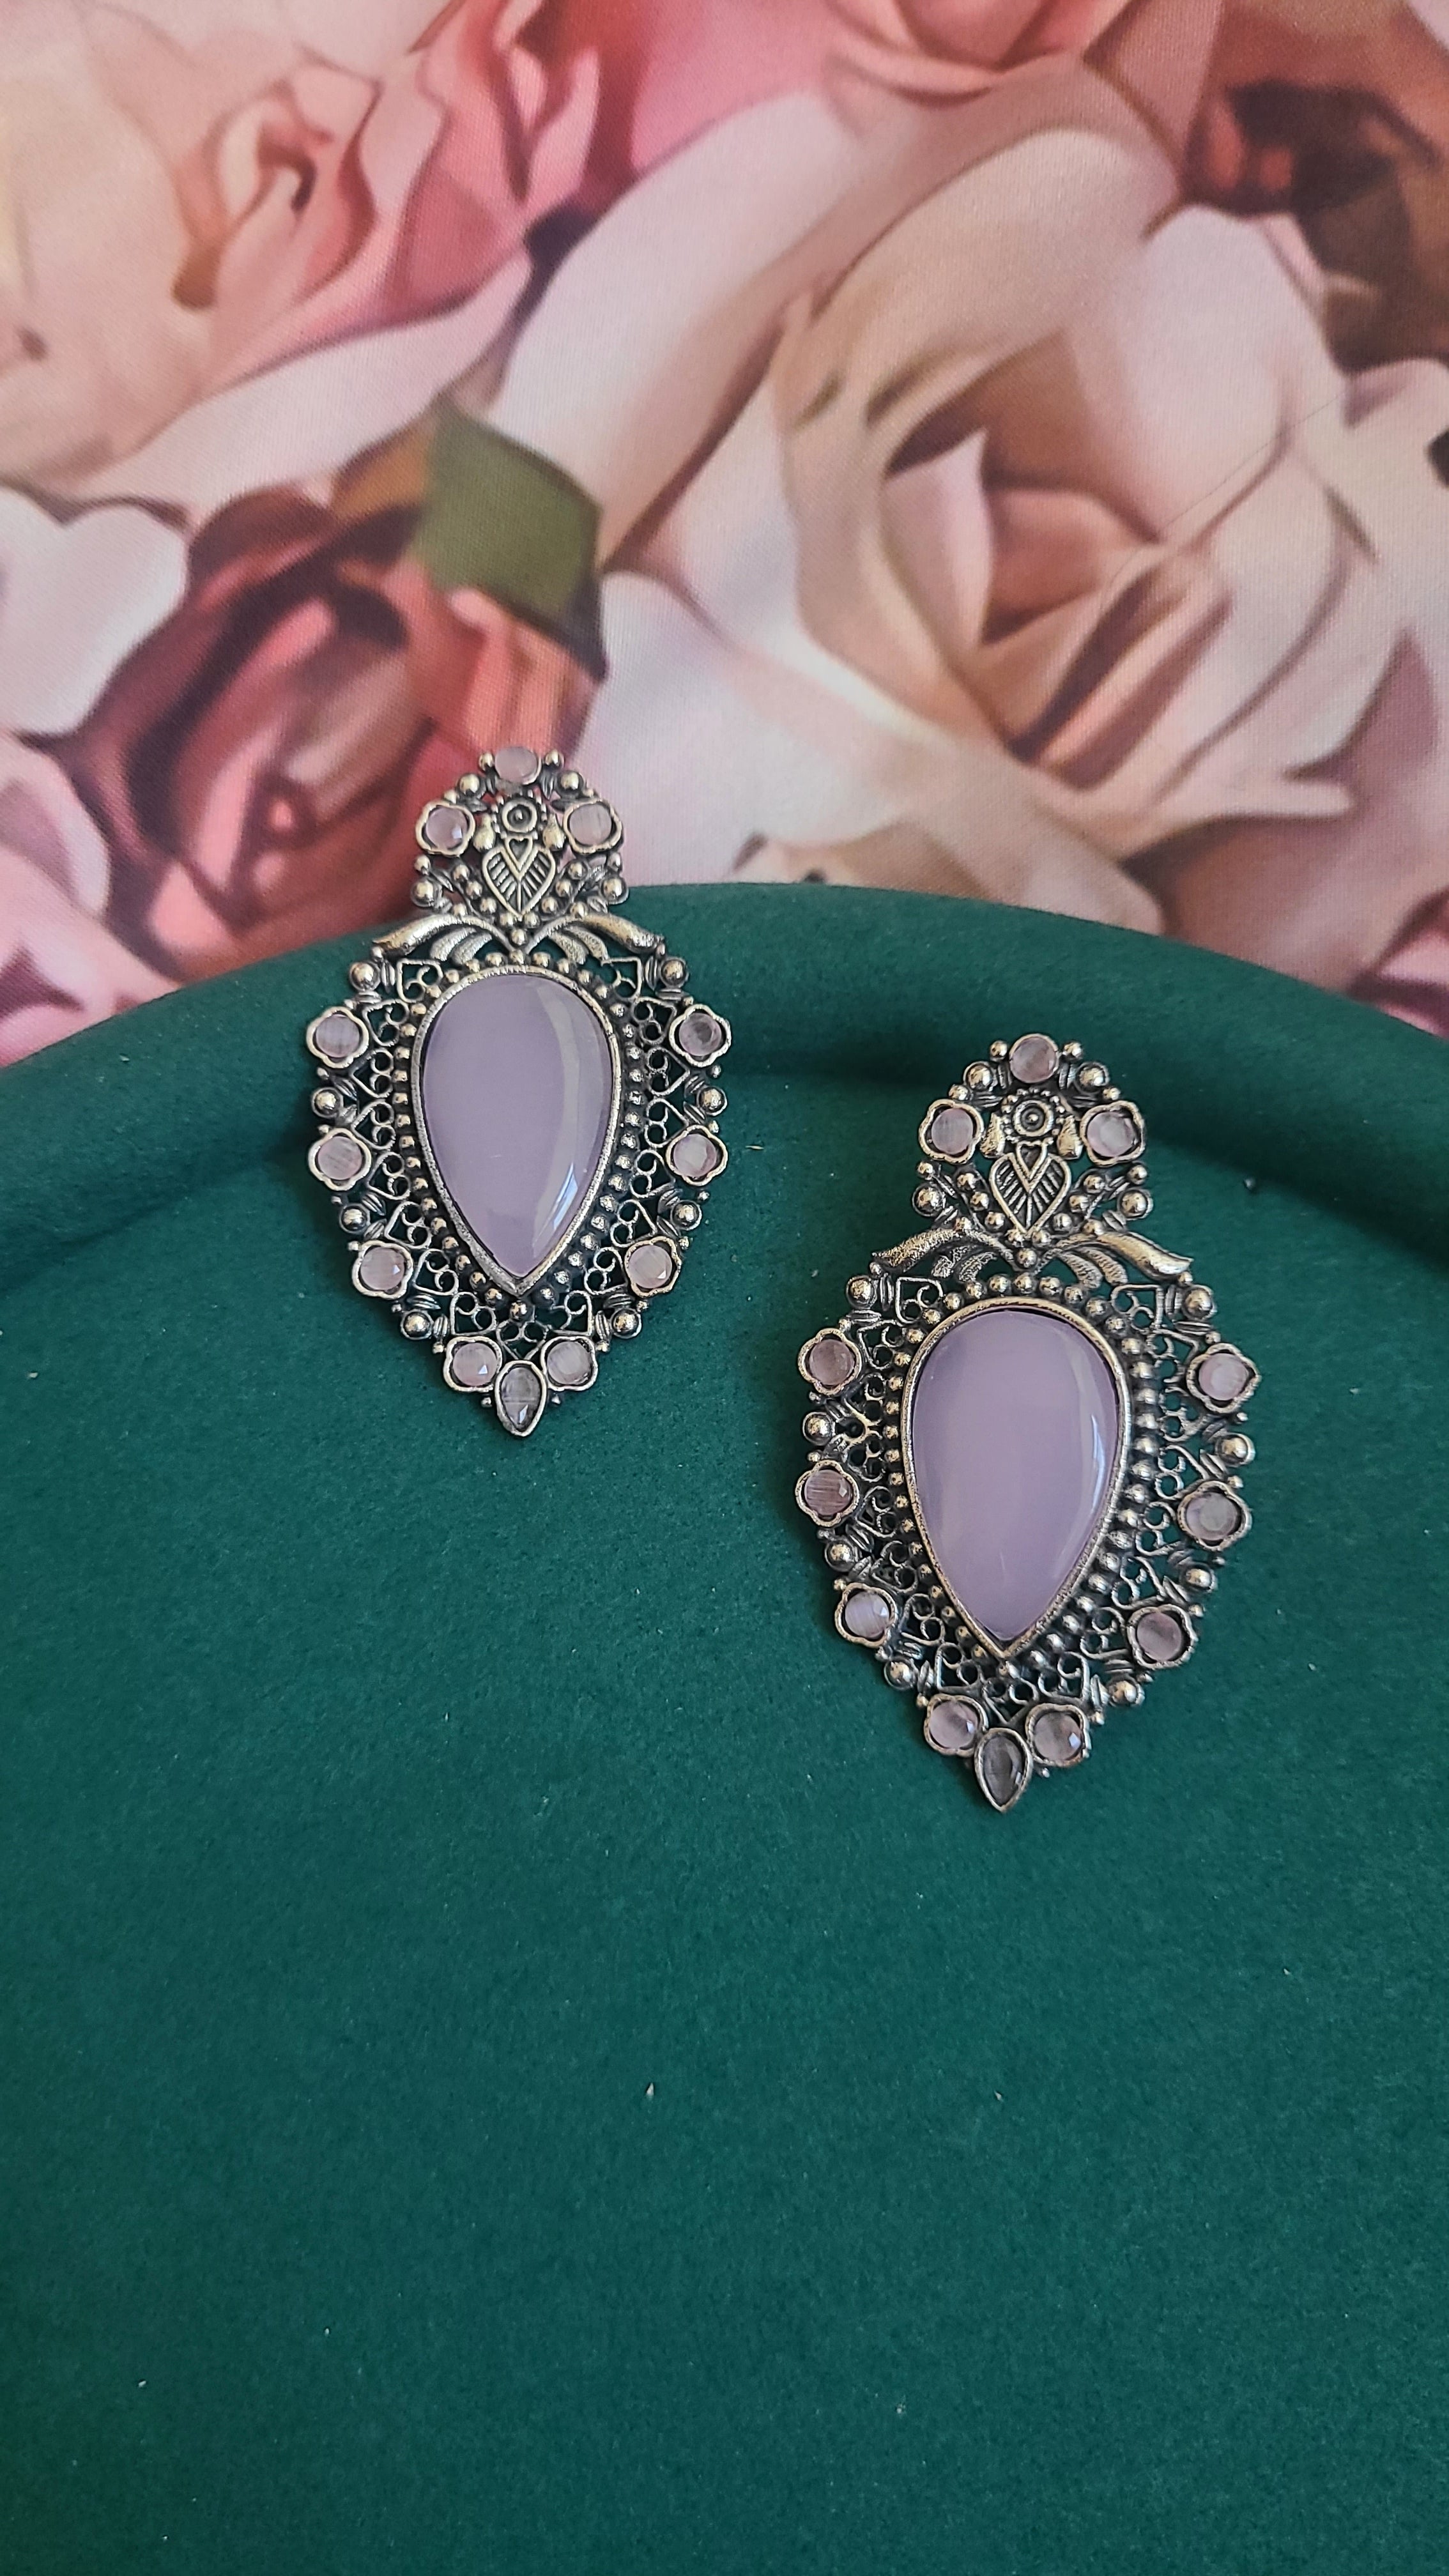 Xxl stone silver alike stud earrings